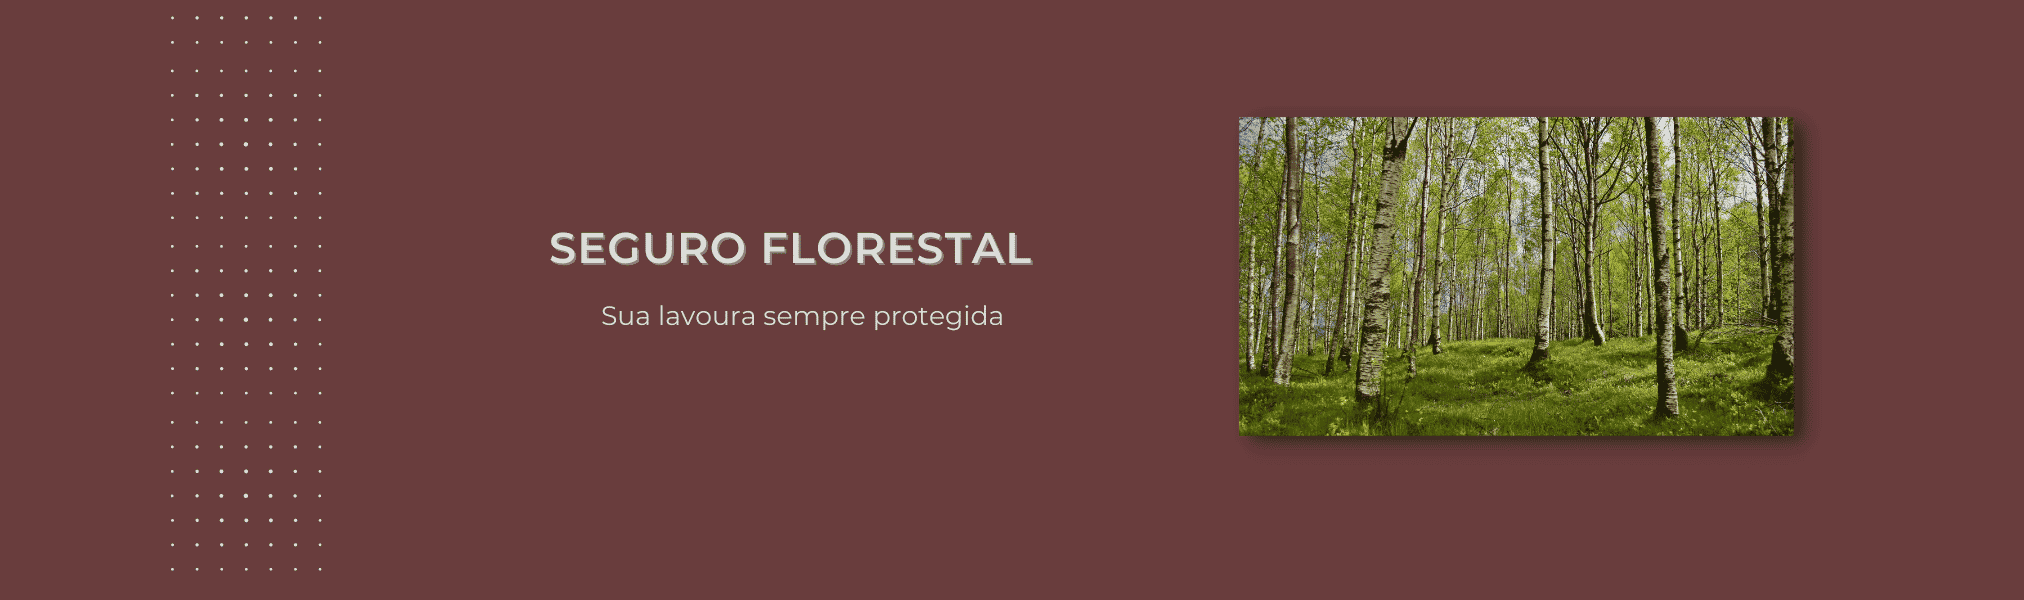 Banner Seguro Florestal